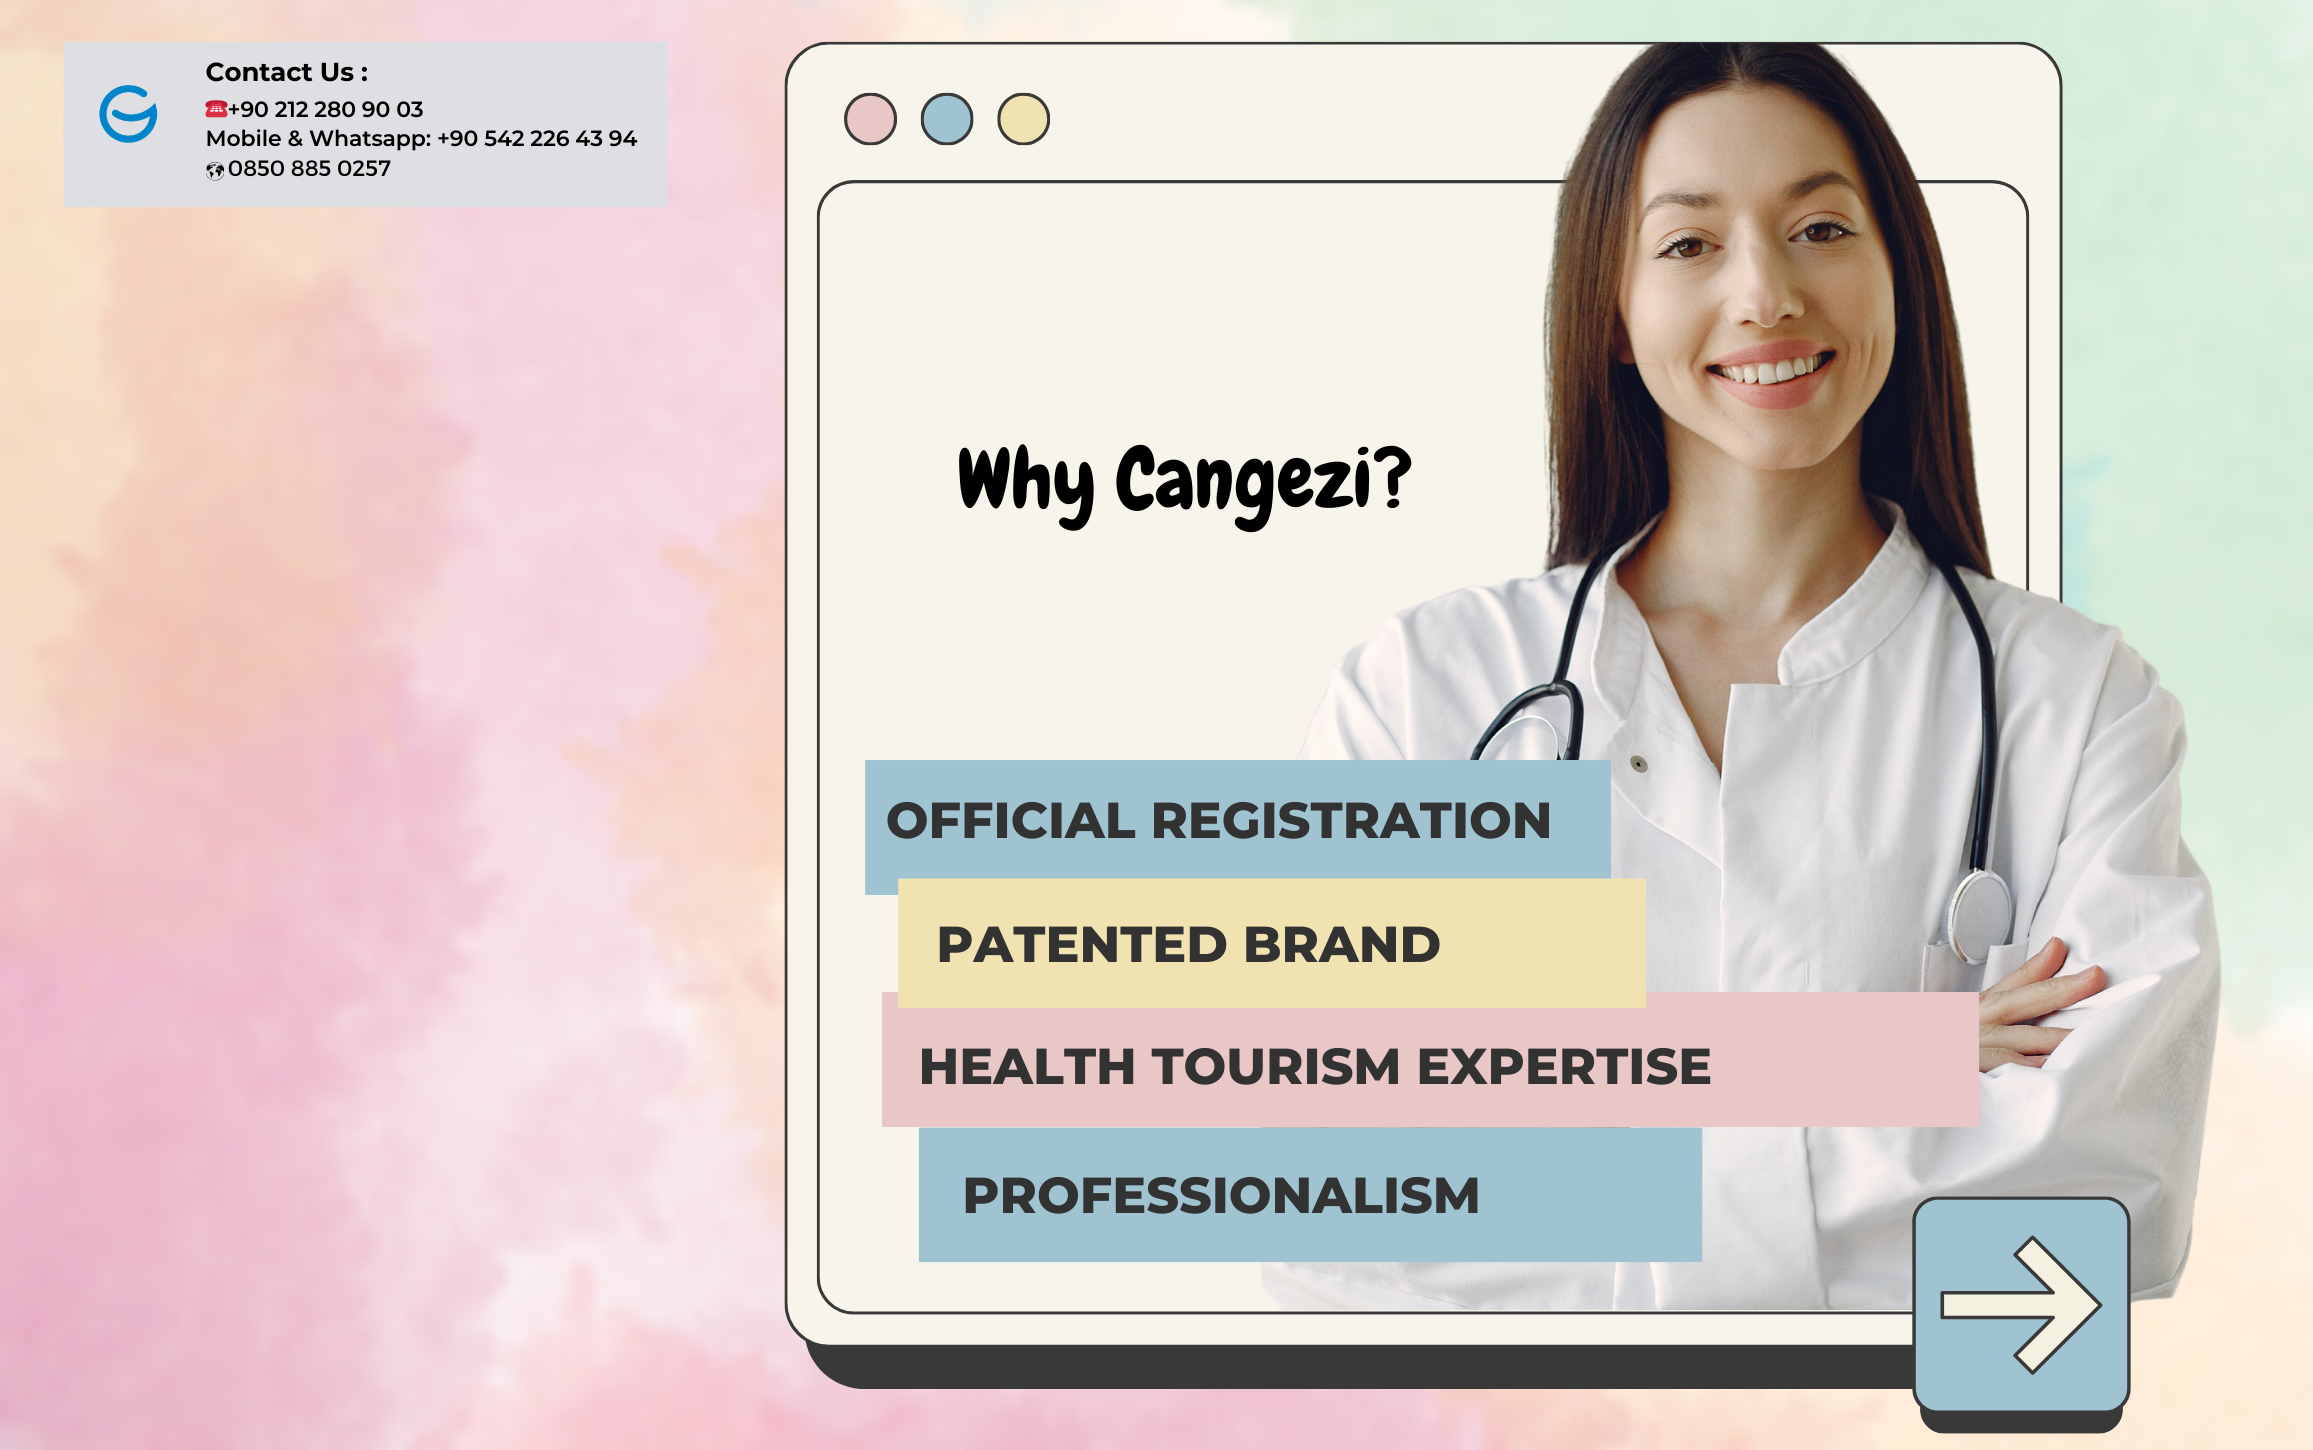 Cangezi for sundhedsturisme